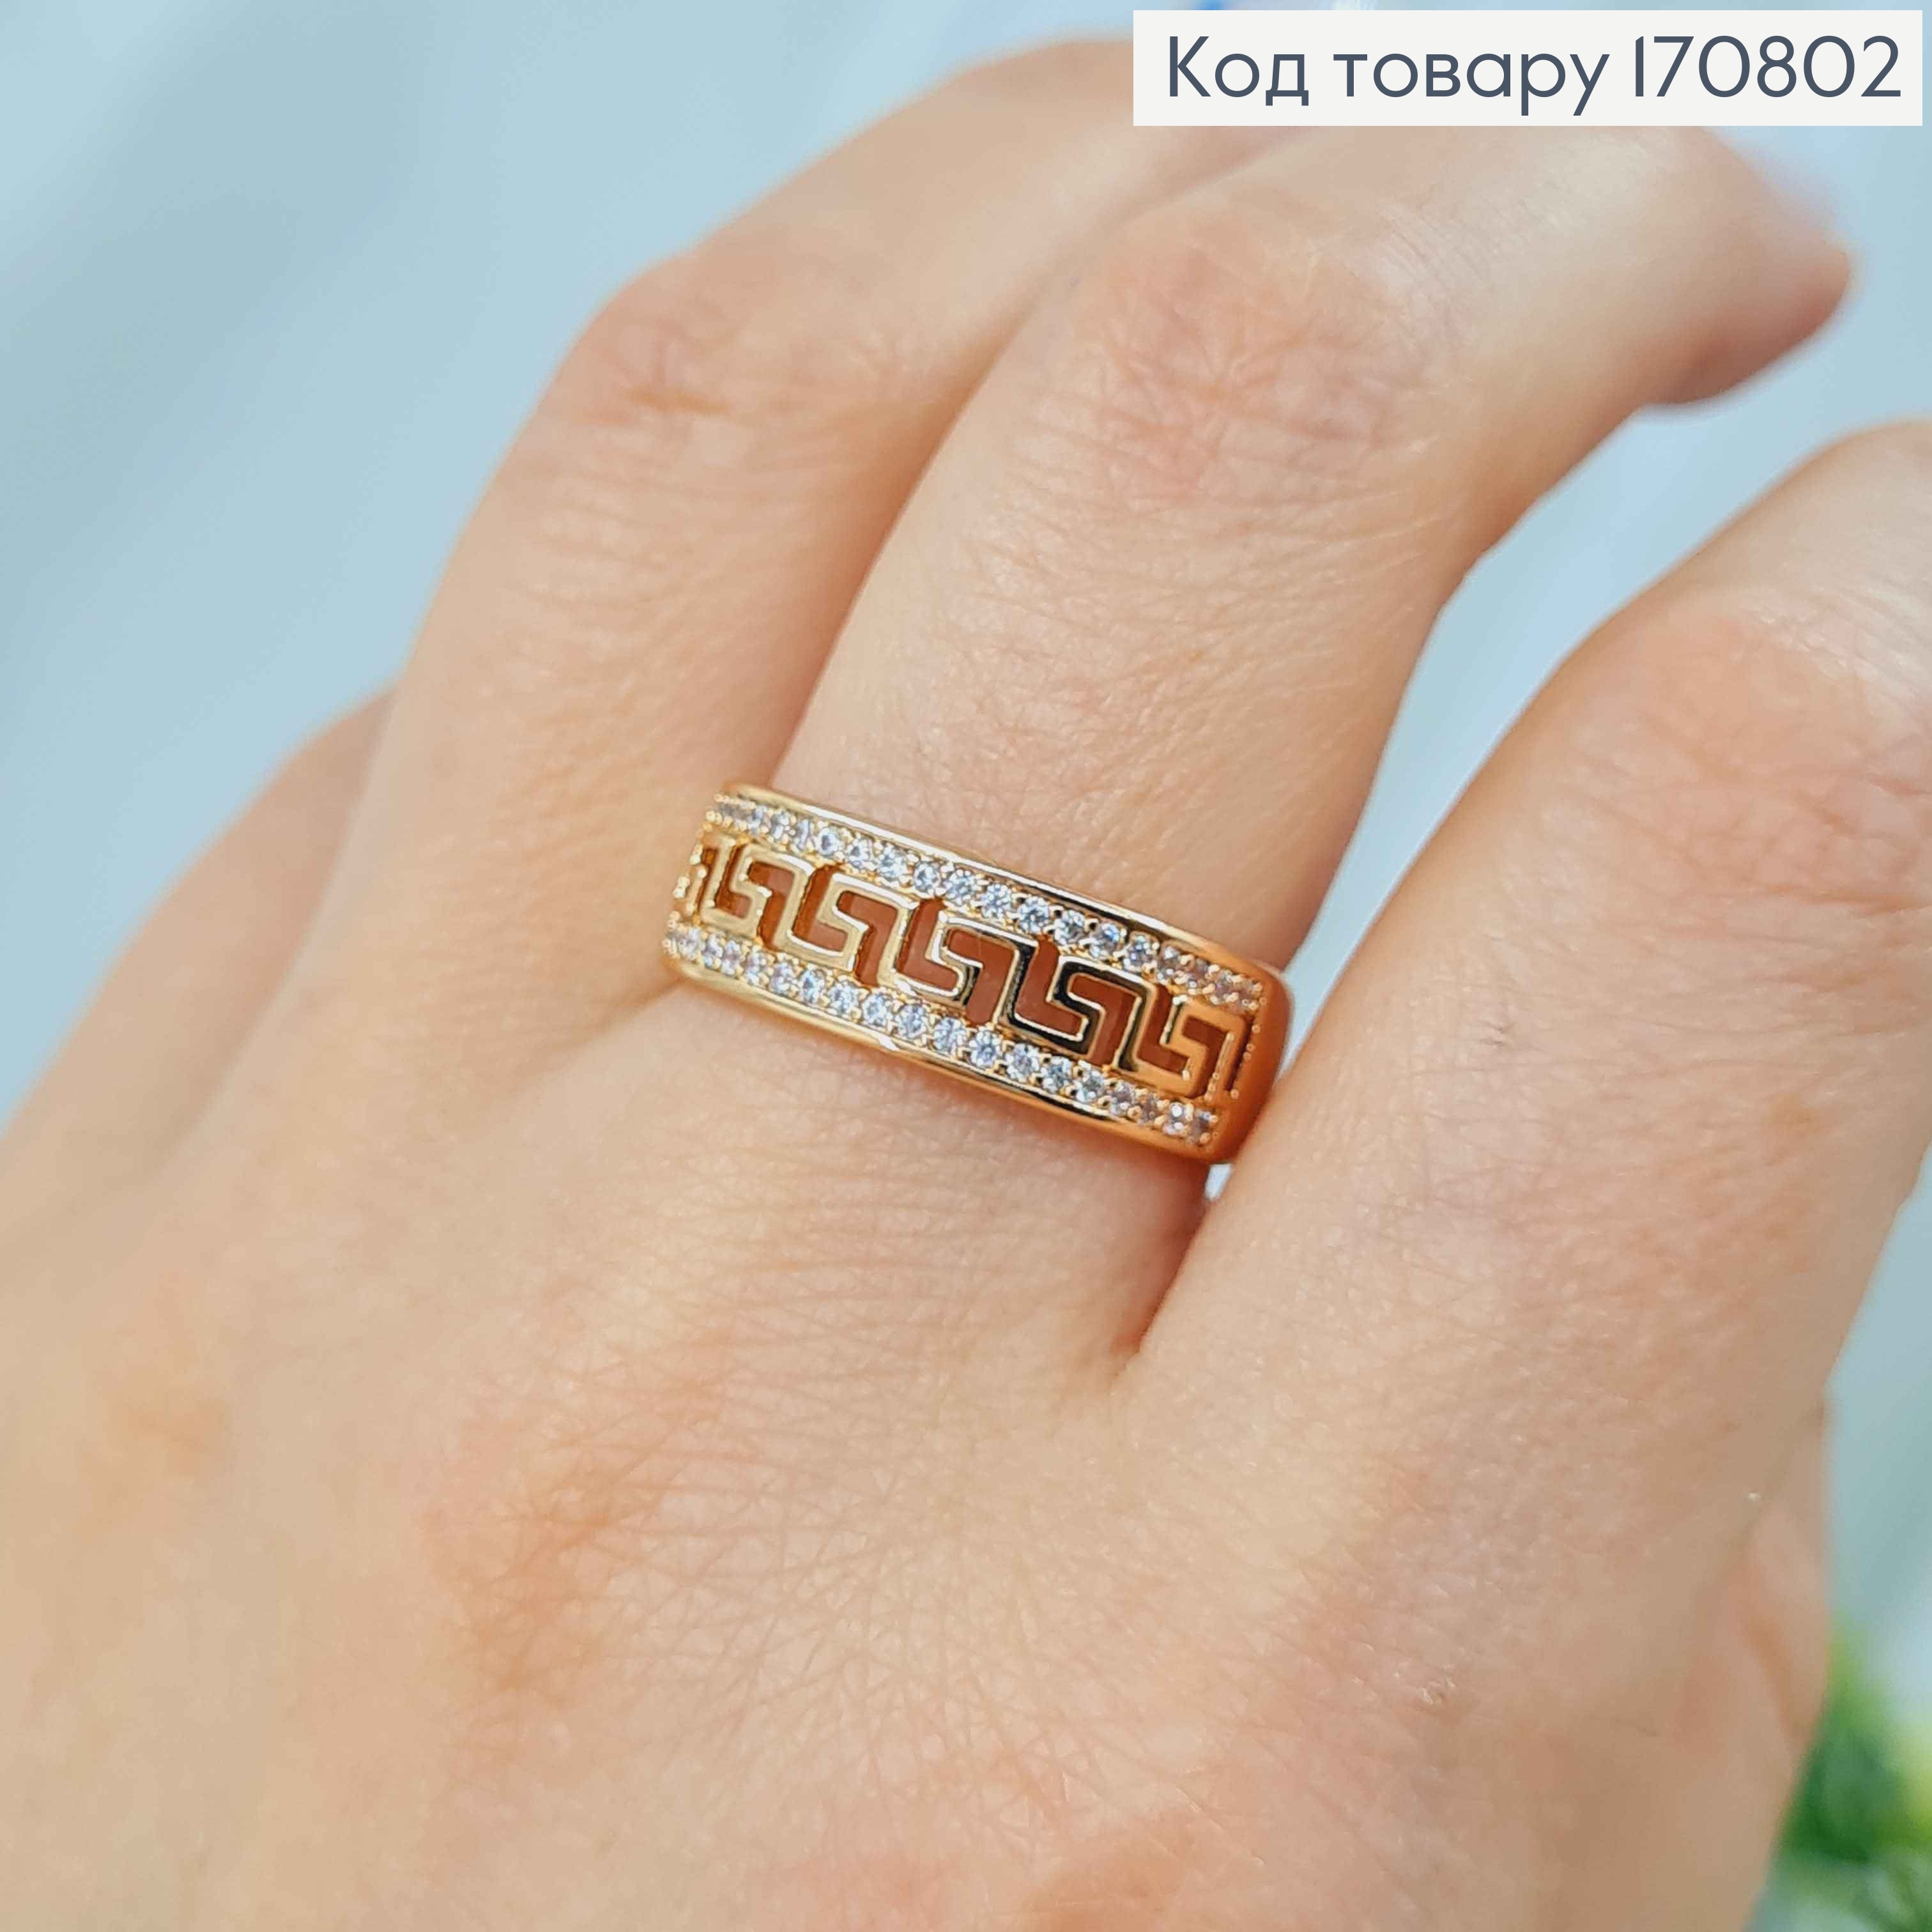 Кольцо, "Версаче" с камнями по краям, Xuping 18K 170802 фото 2